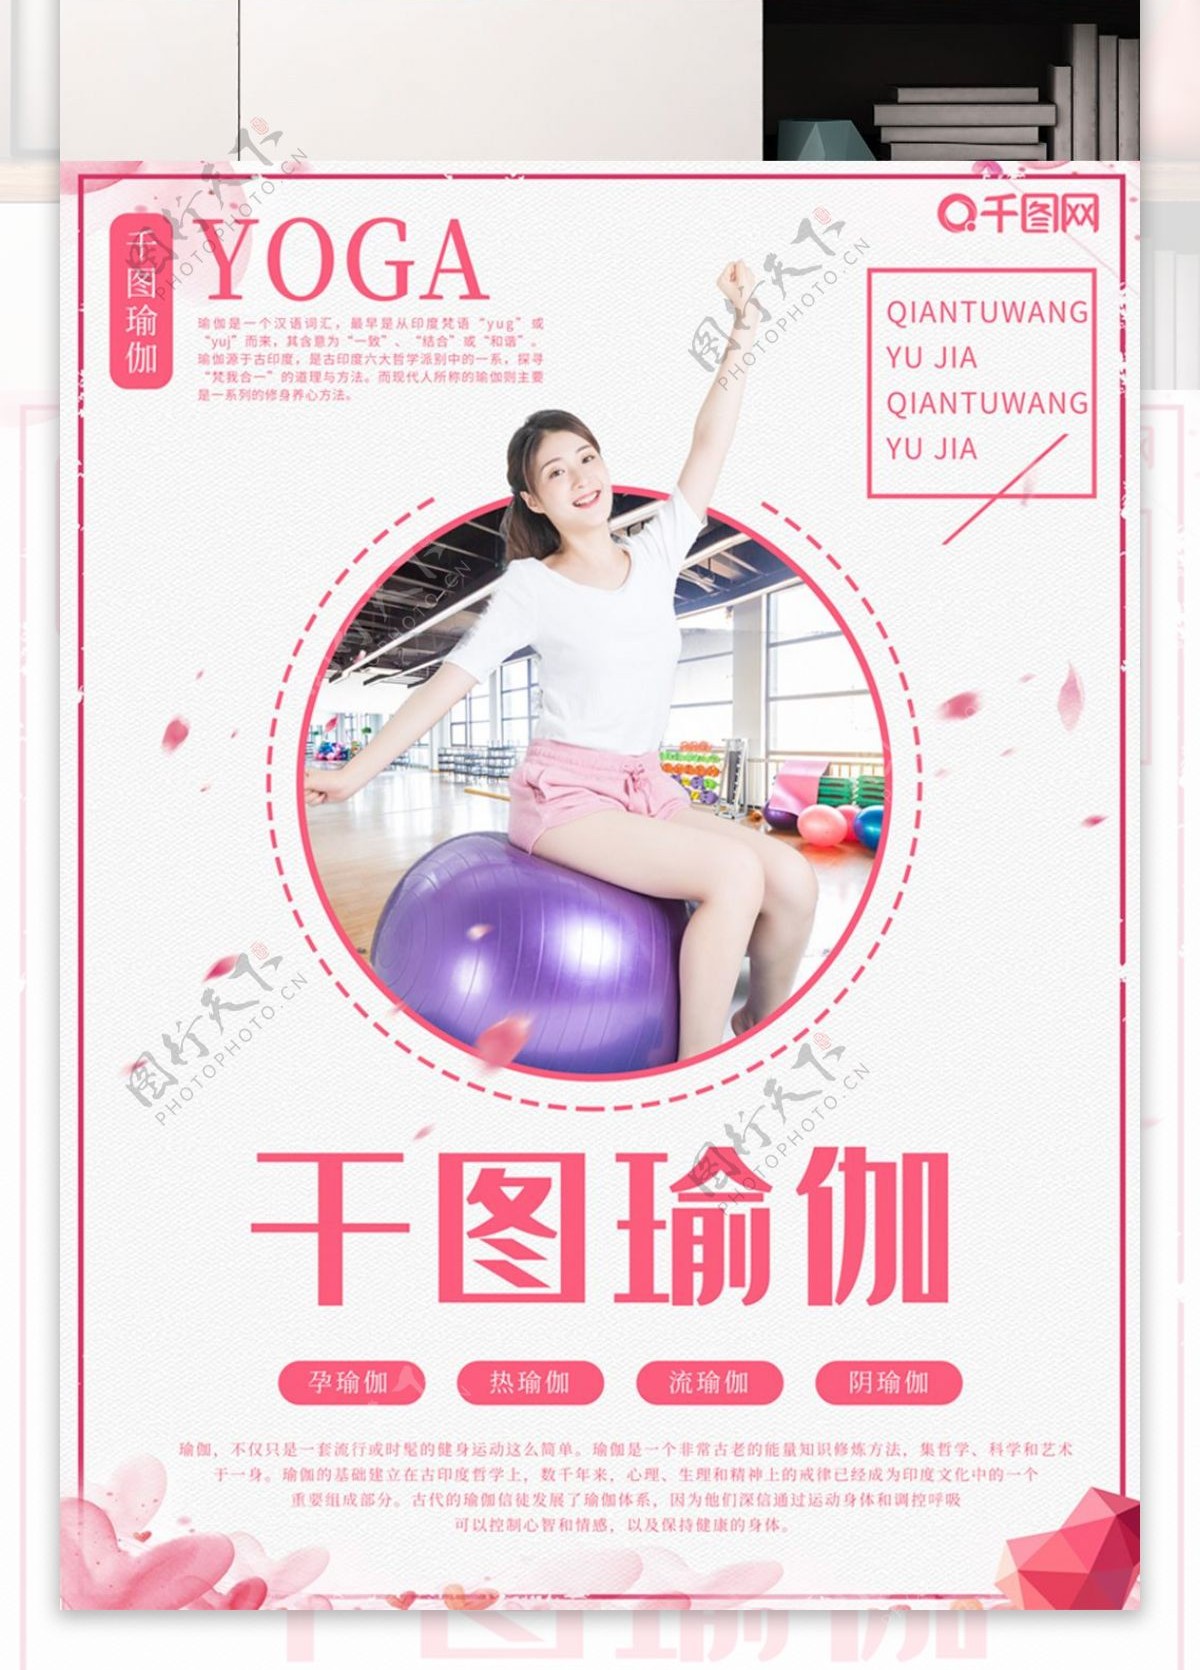 原创瑜伽球海报健身女士运动粉色柔美风